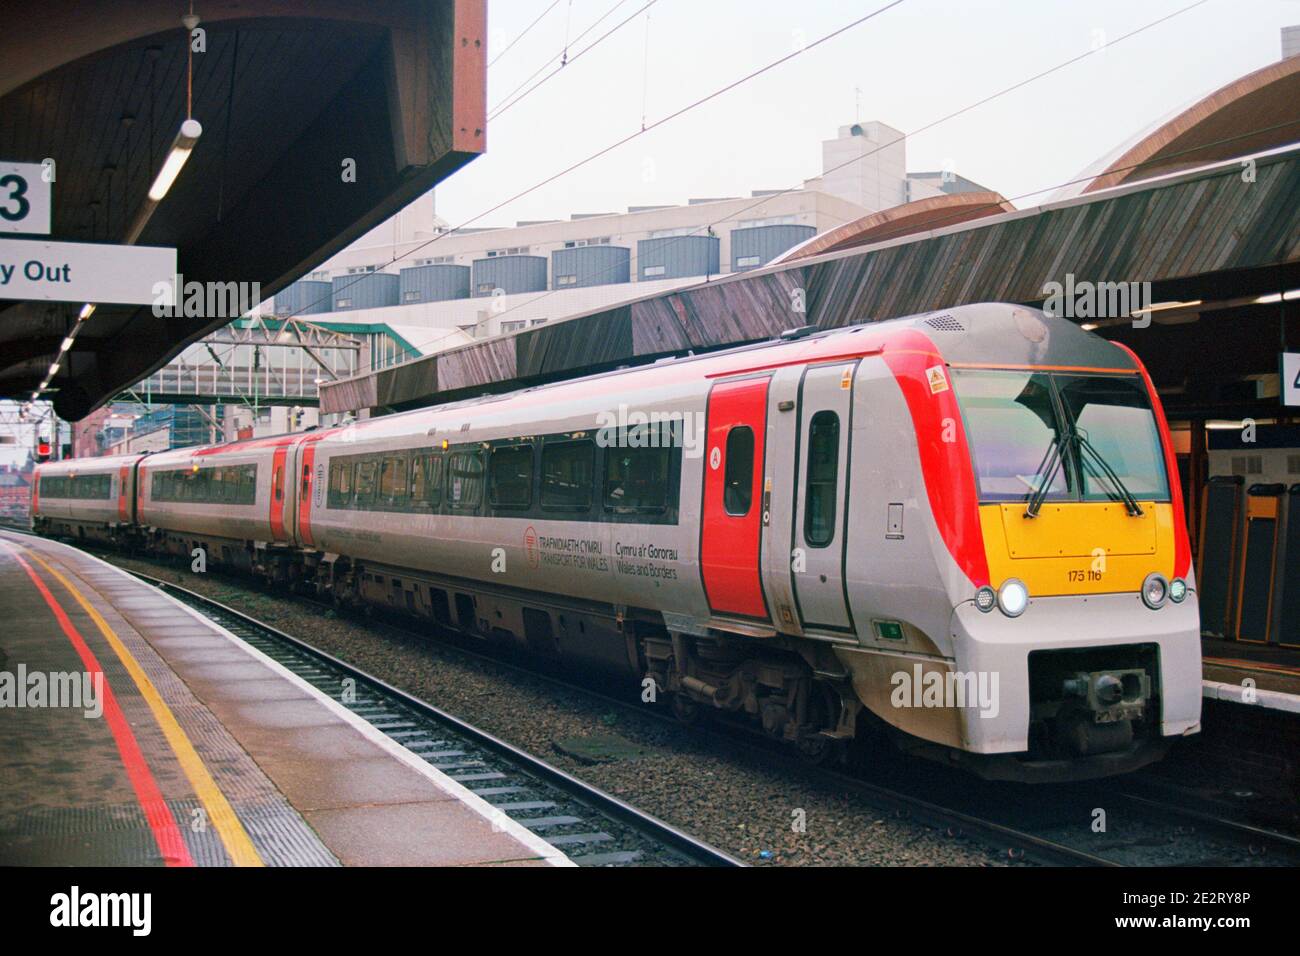 Manchester, Royaume-Uni - 31 décembre 2020 : train de voyageurs diesel (classe 170) exploité par transport for Wales à la gare de Manchester Oxford Road. Banque D'Images